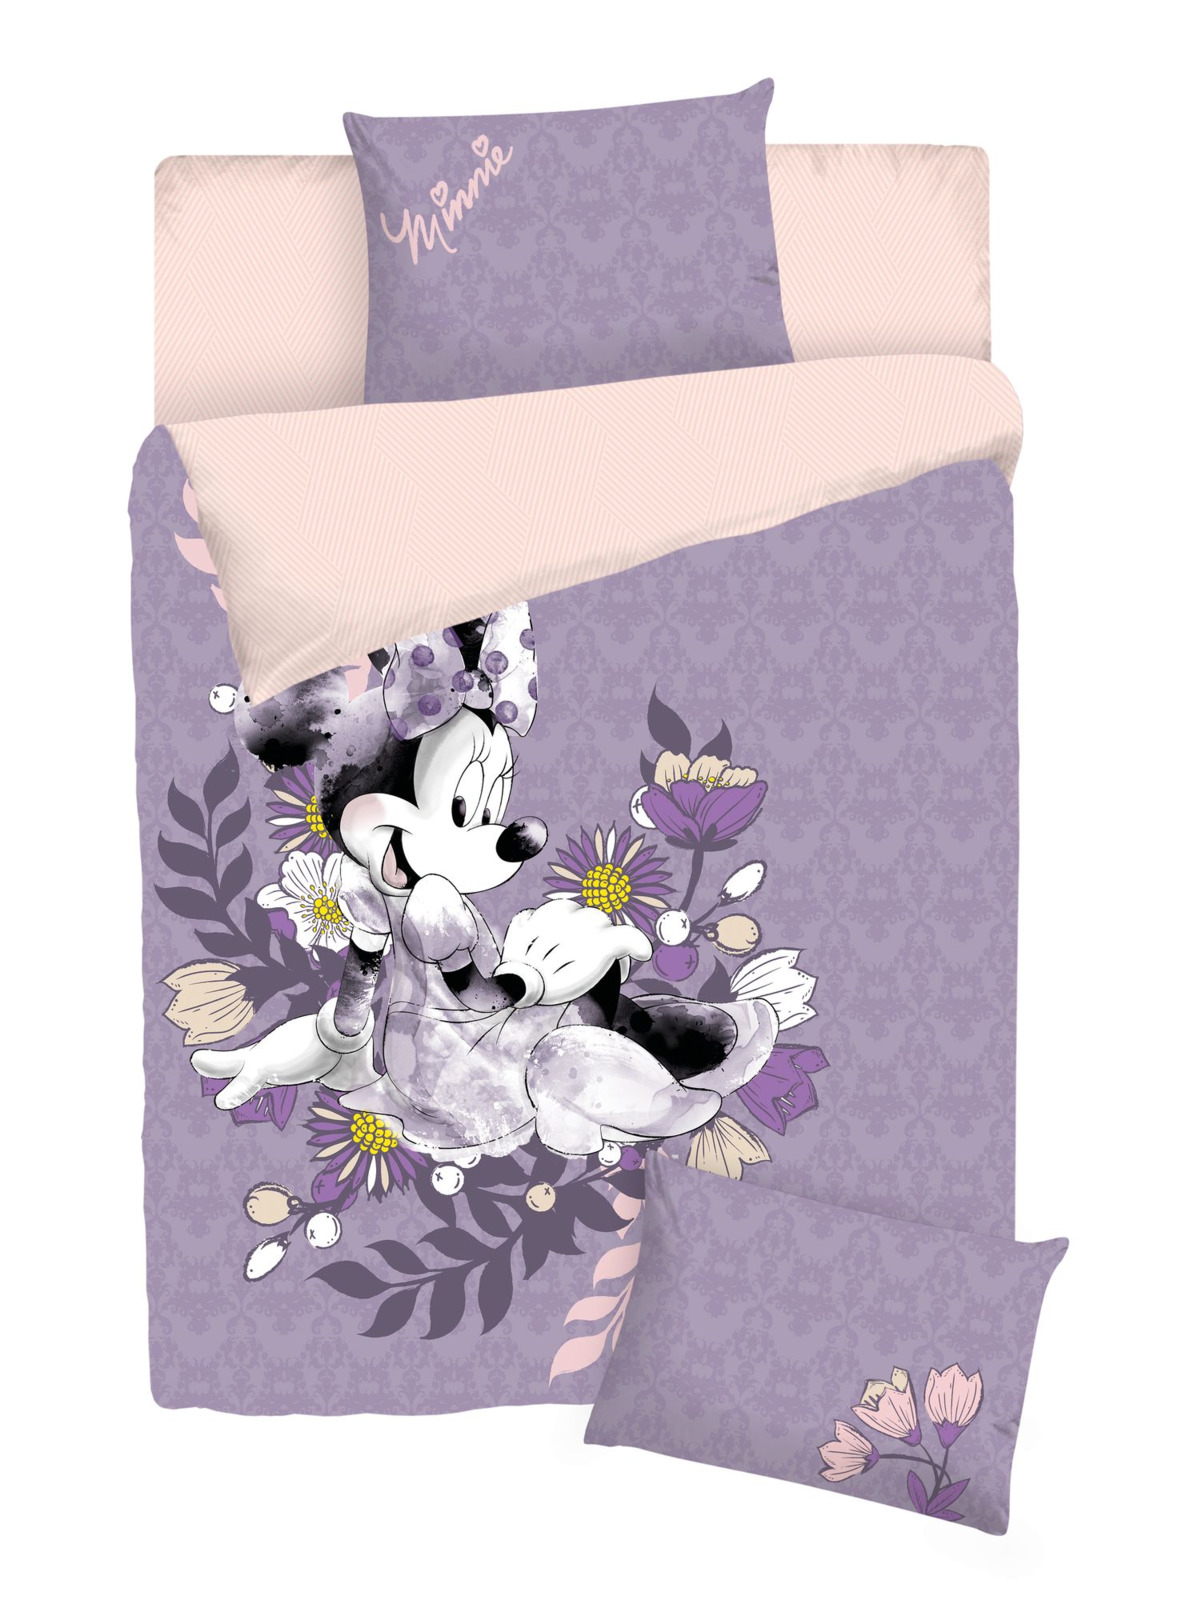 фото Комплект постельного белья Disney Minnie Maus, сиреневый, 1,5-спальный, наволочки 50х70